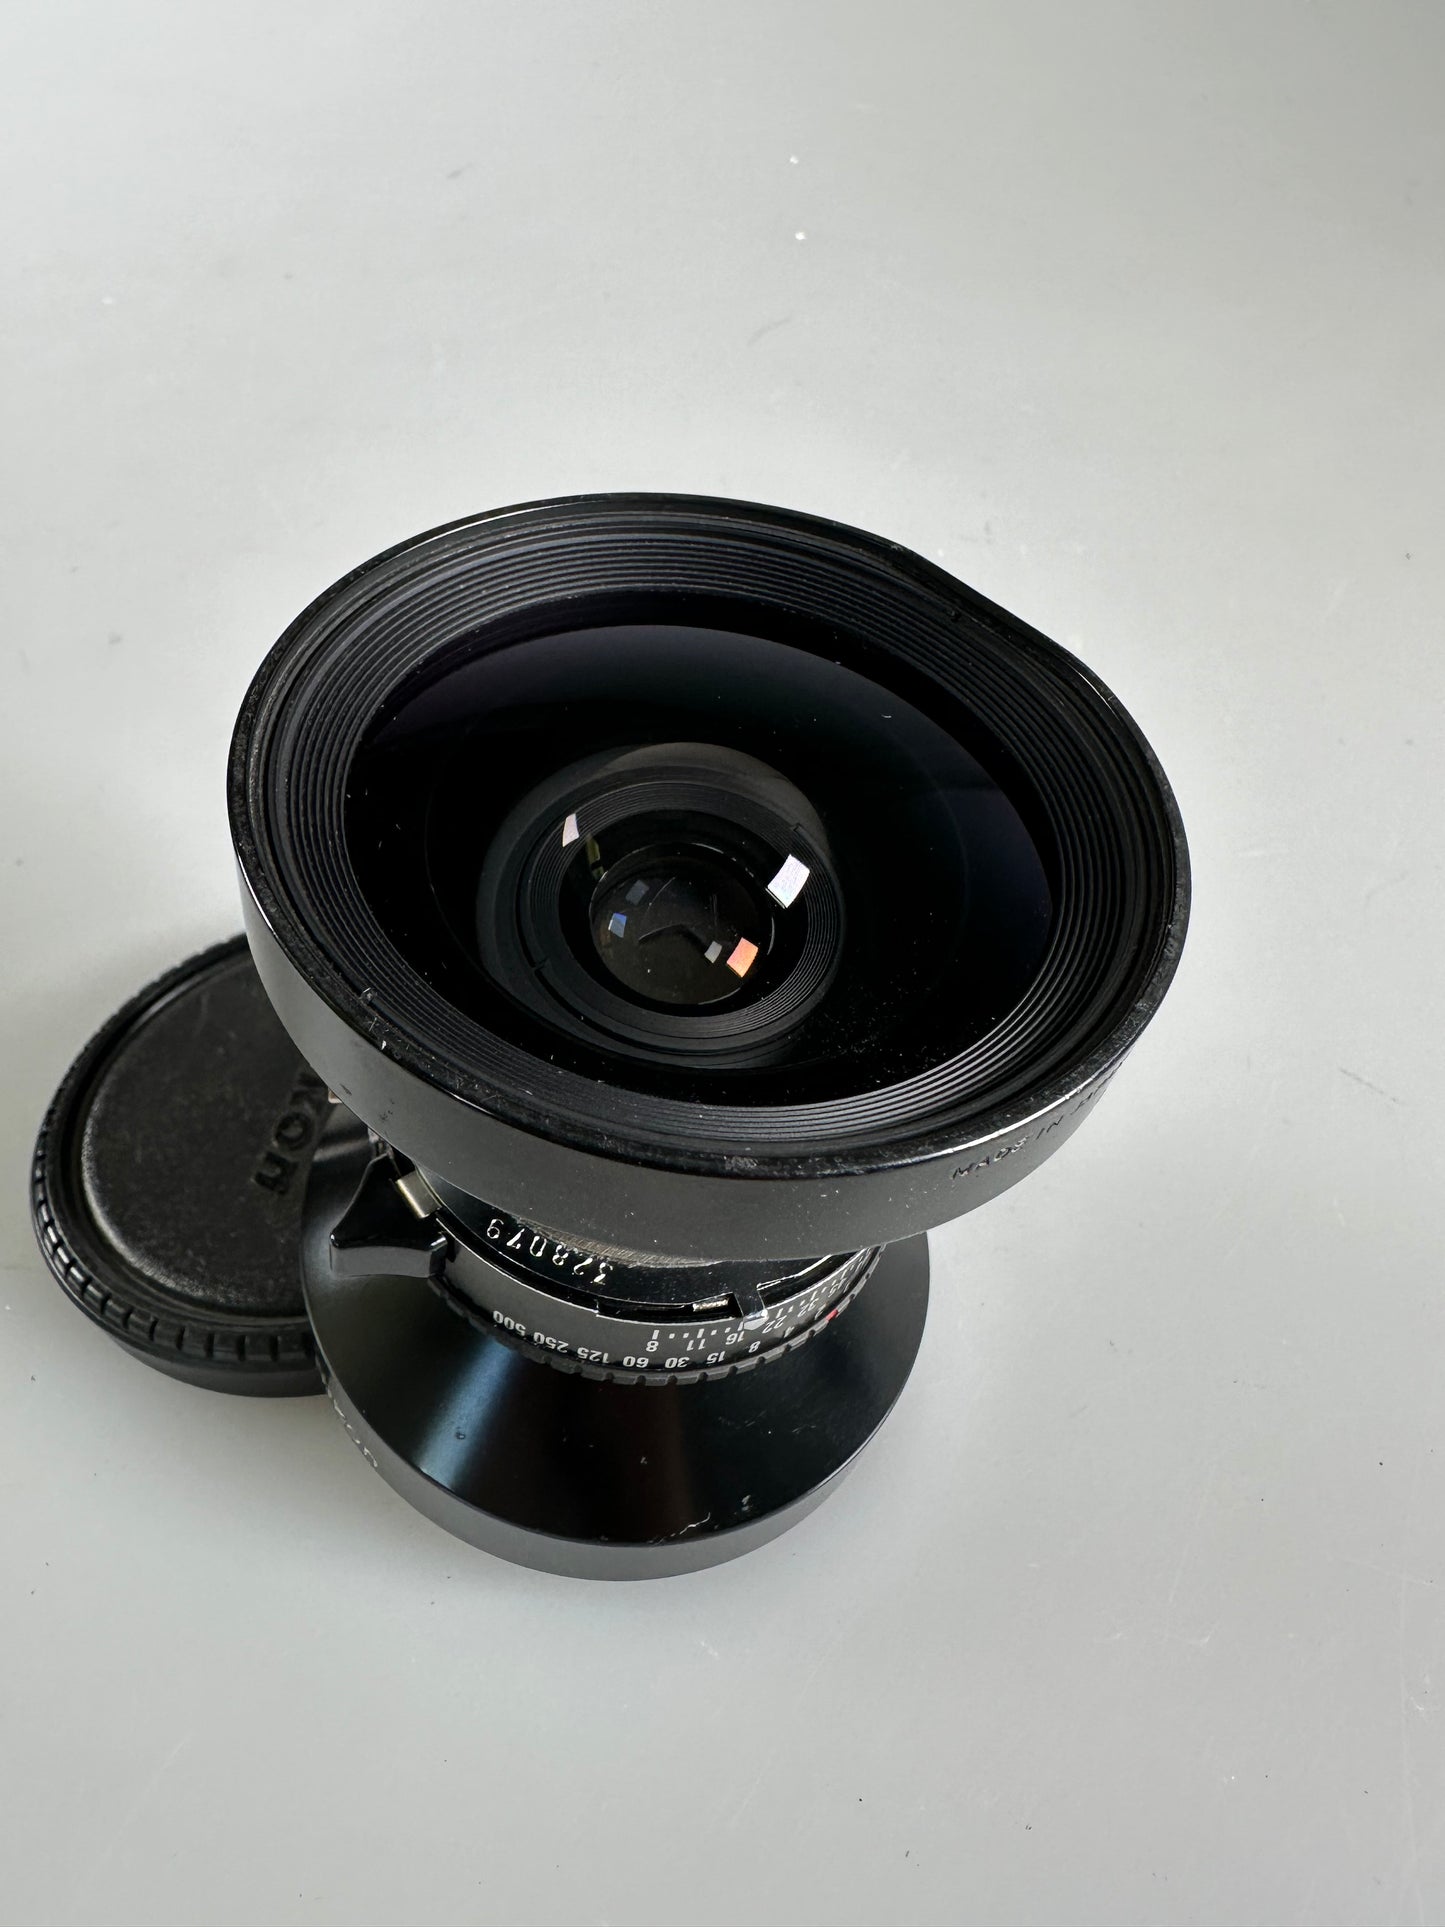 Nikon Nikkor SW 120mm f/8 S Large Format lens Copal 0 Shutter